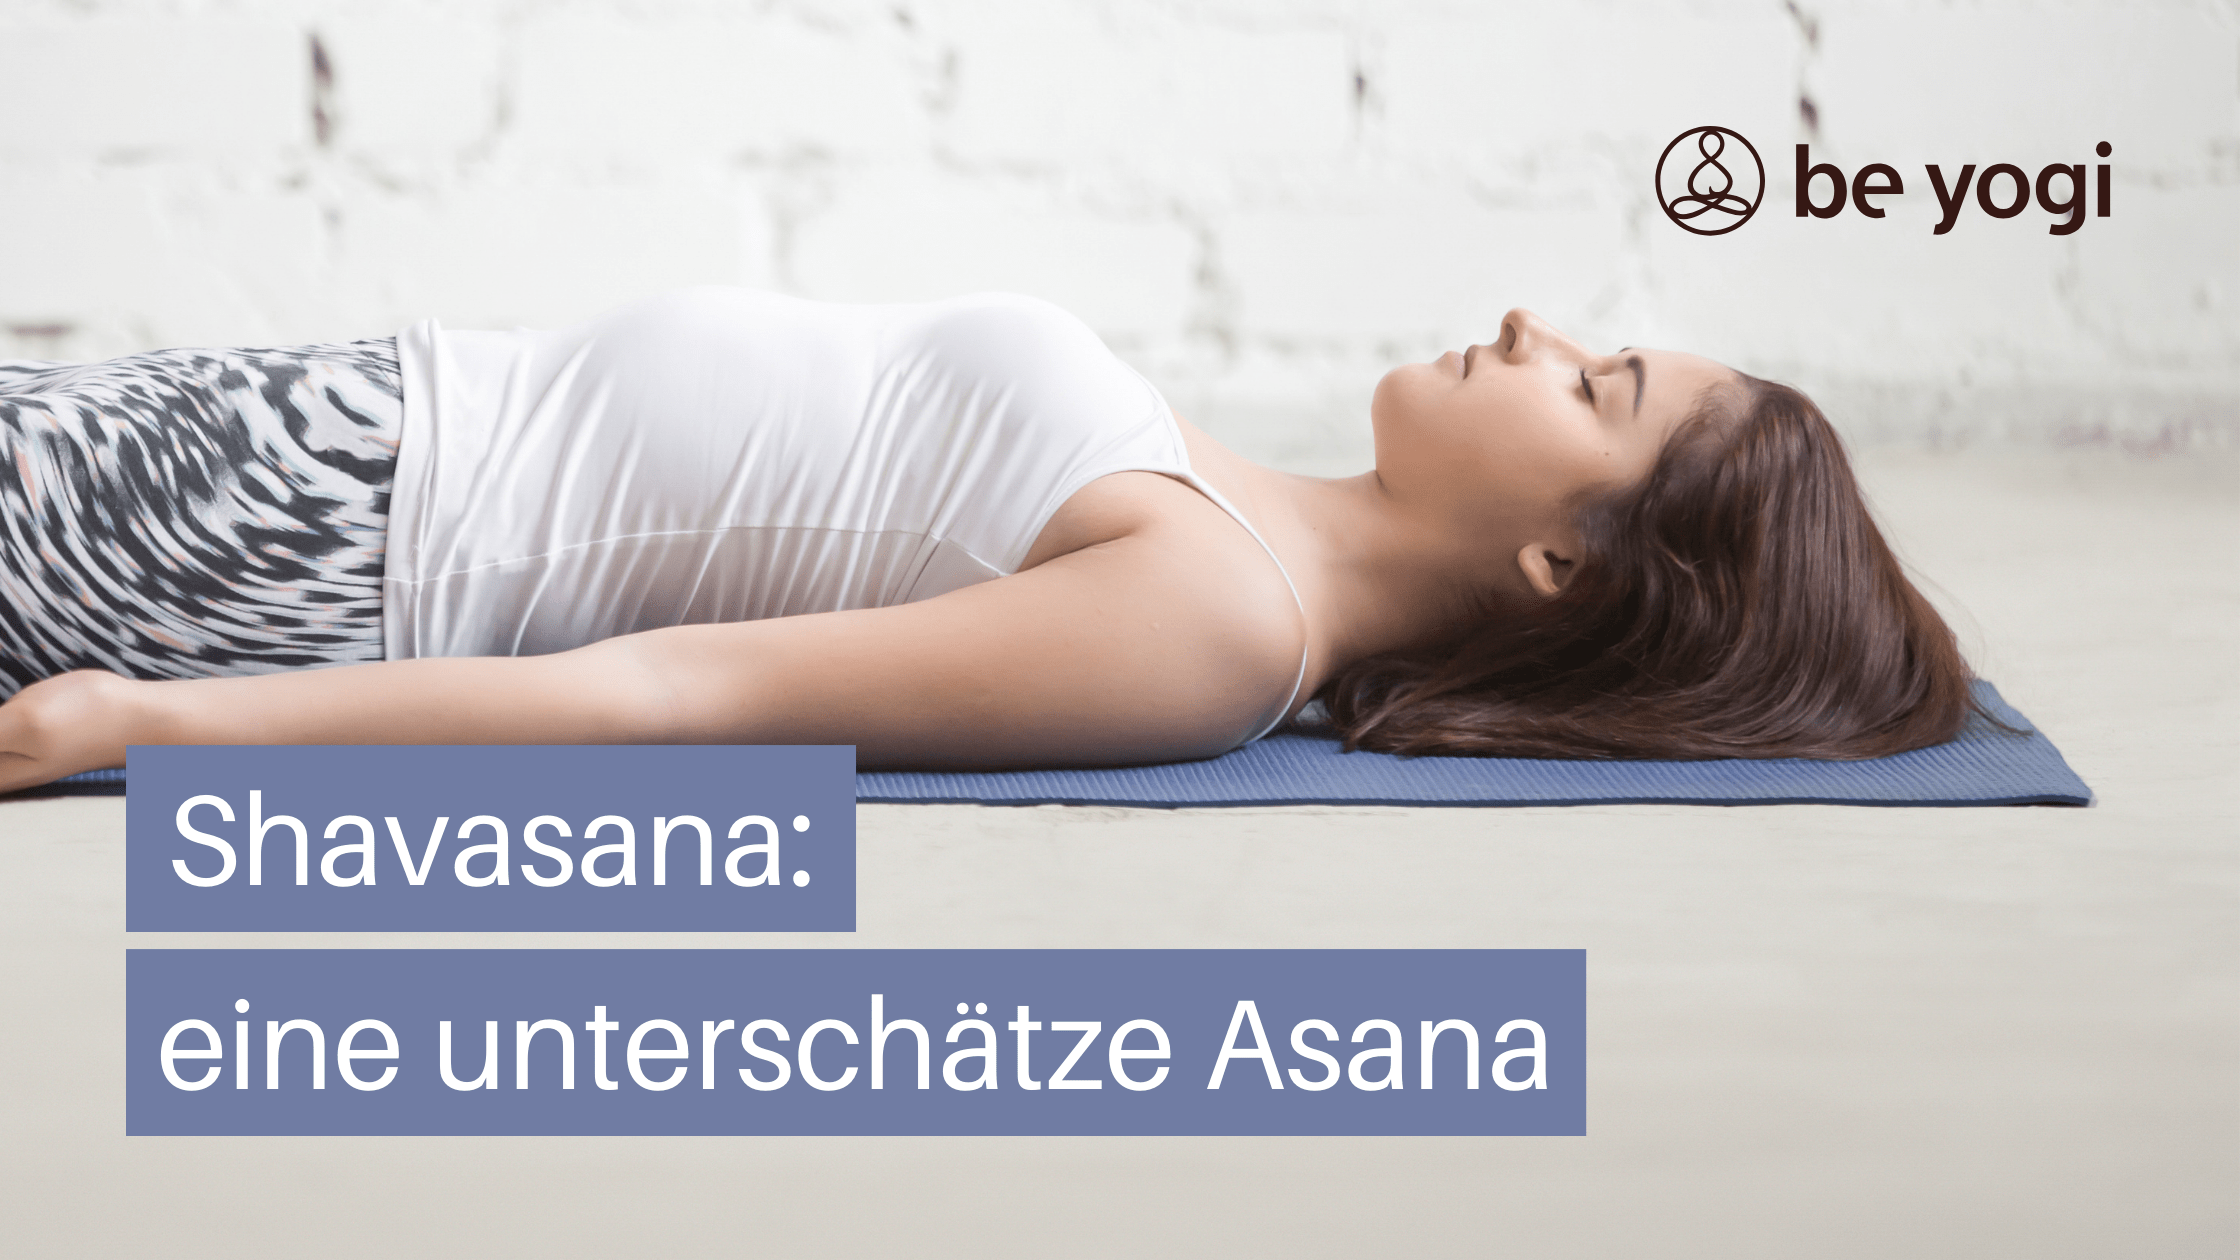 Shavasana die unterschaetzte asana savasana totenstellung corpse pose BeYogi Artikel Ayurveda Yoga